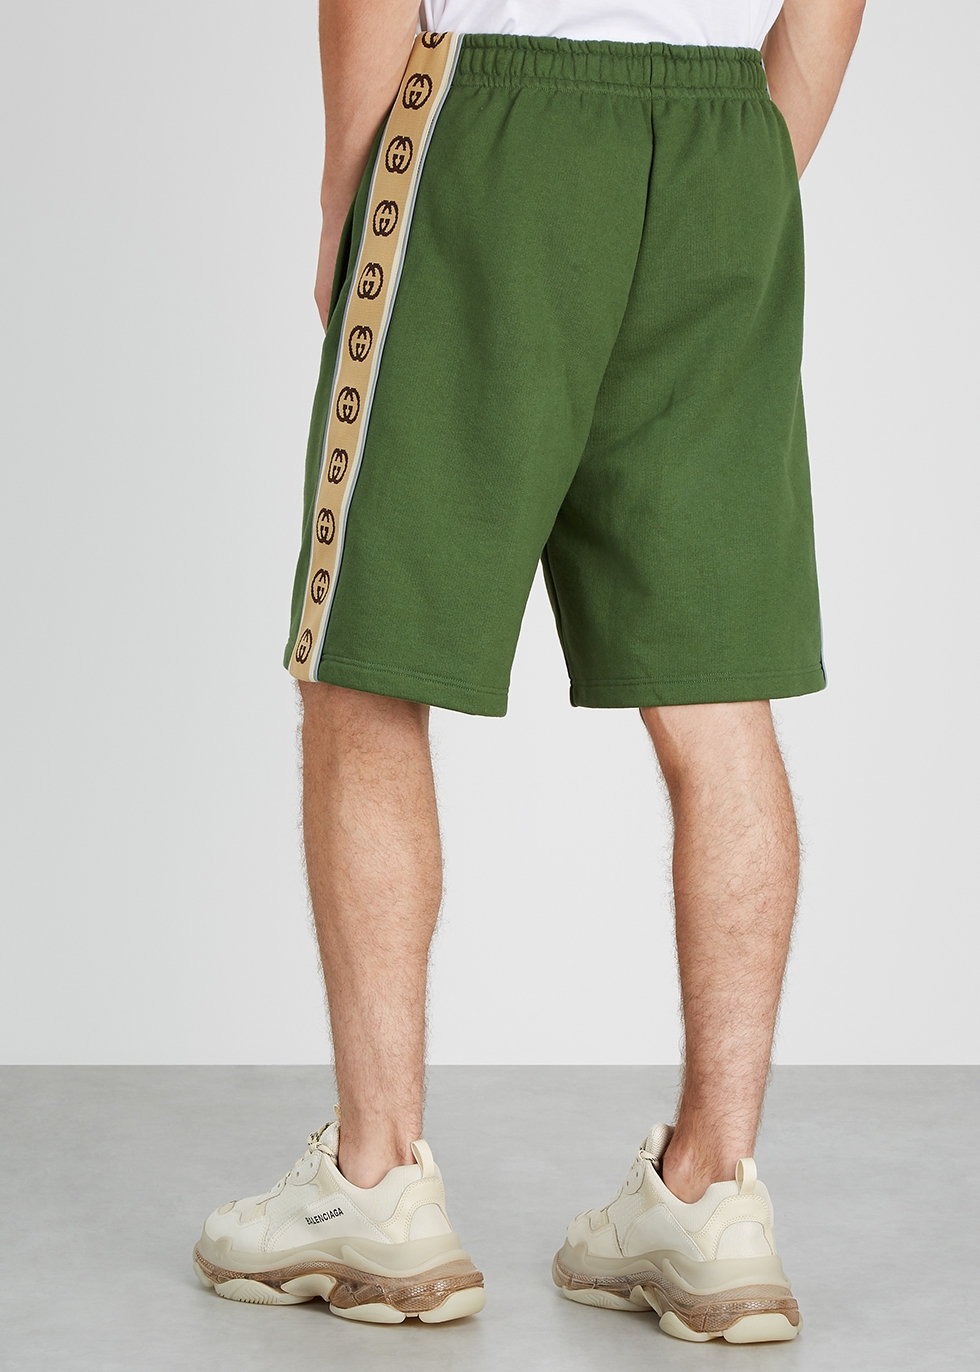 green gucci shorts